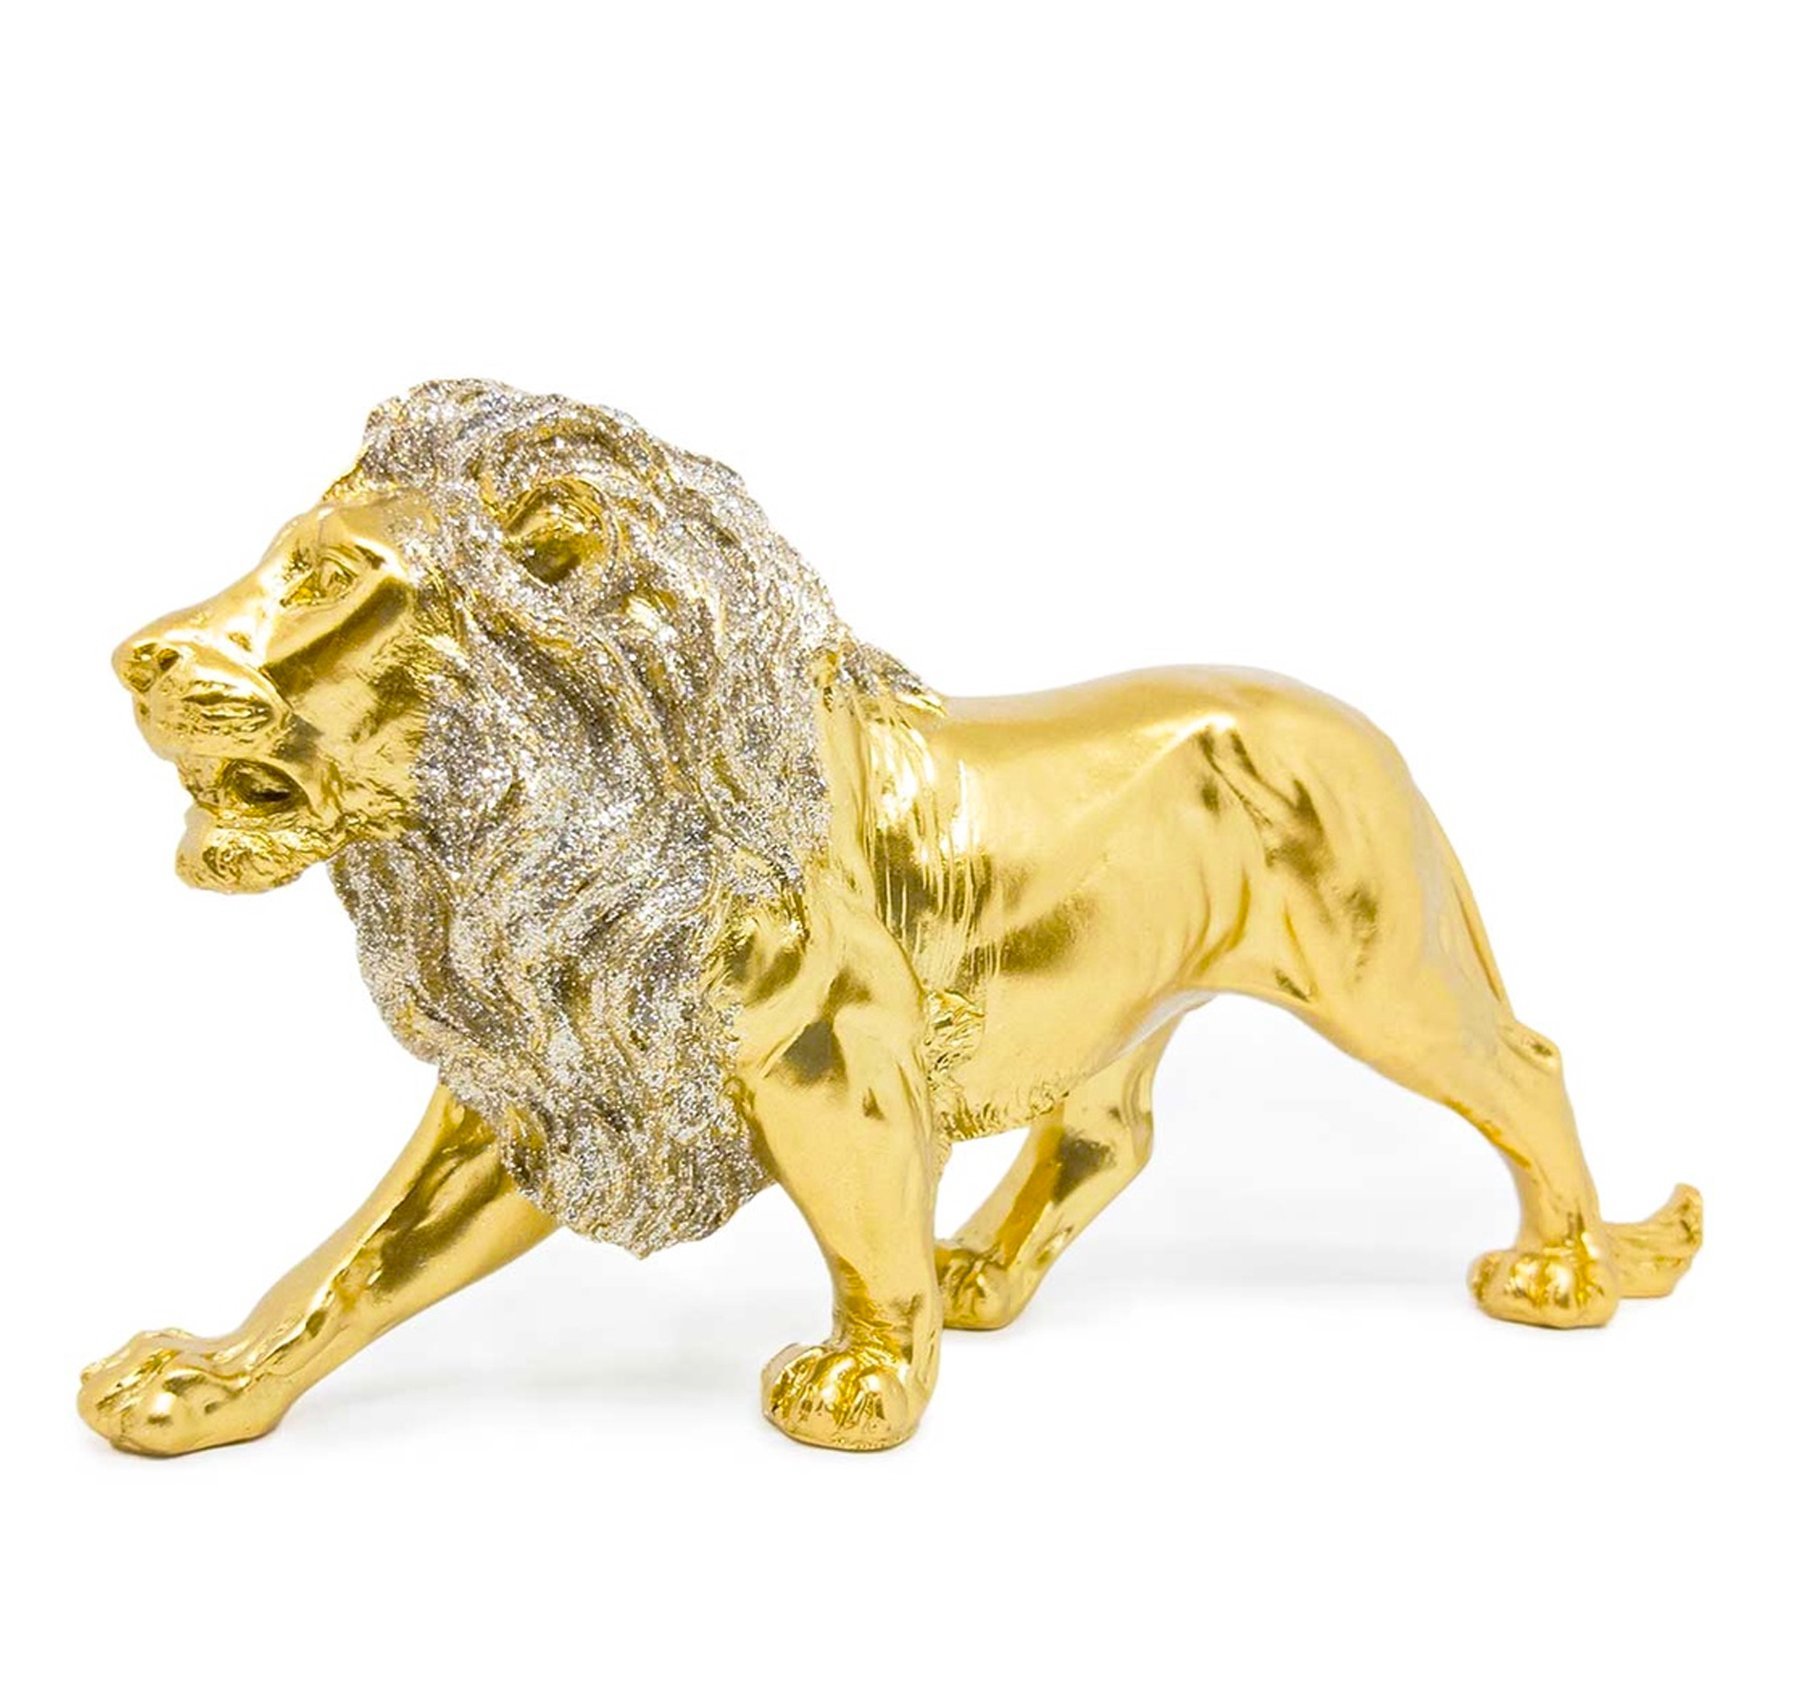 Estatua Enfeite de Resina Leão Dourado Brilhante 21cm - 1